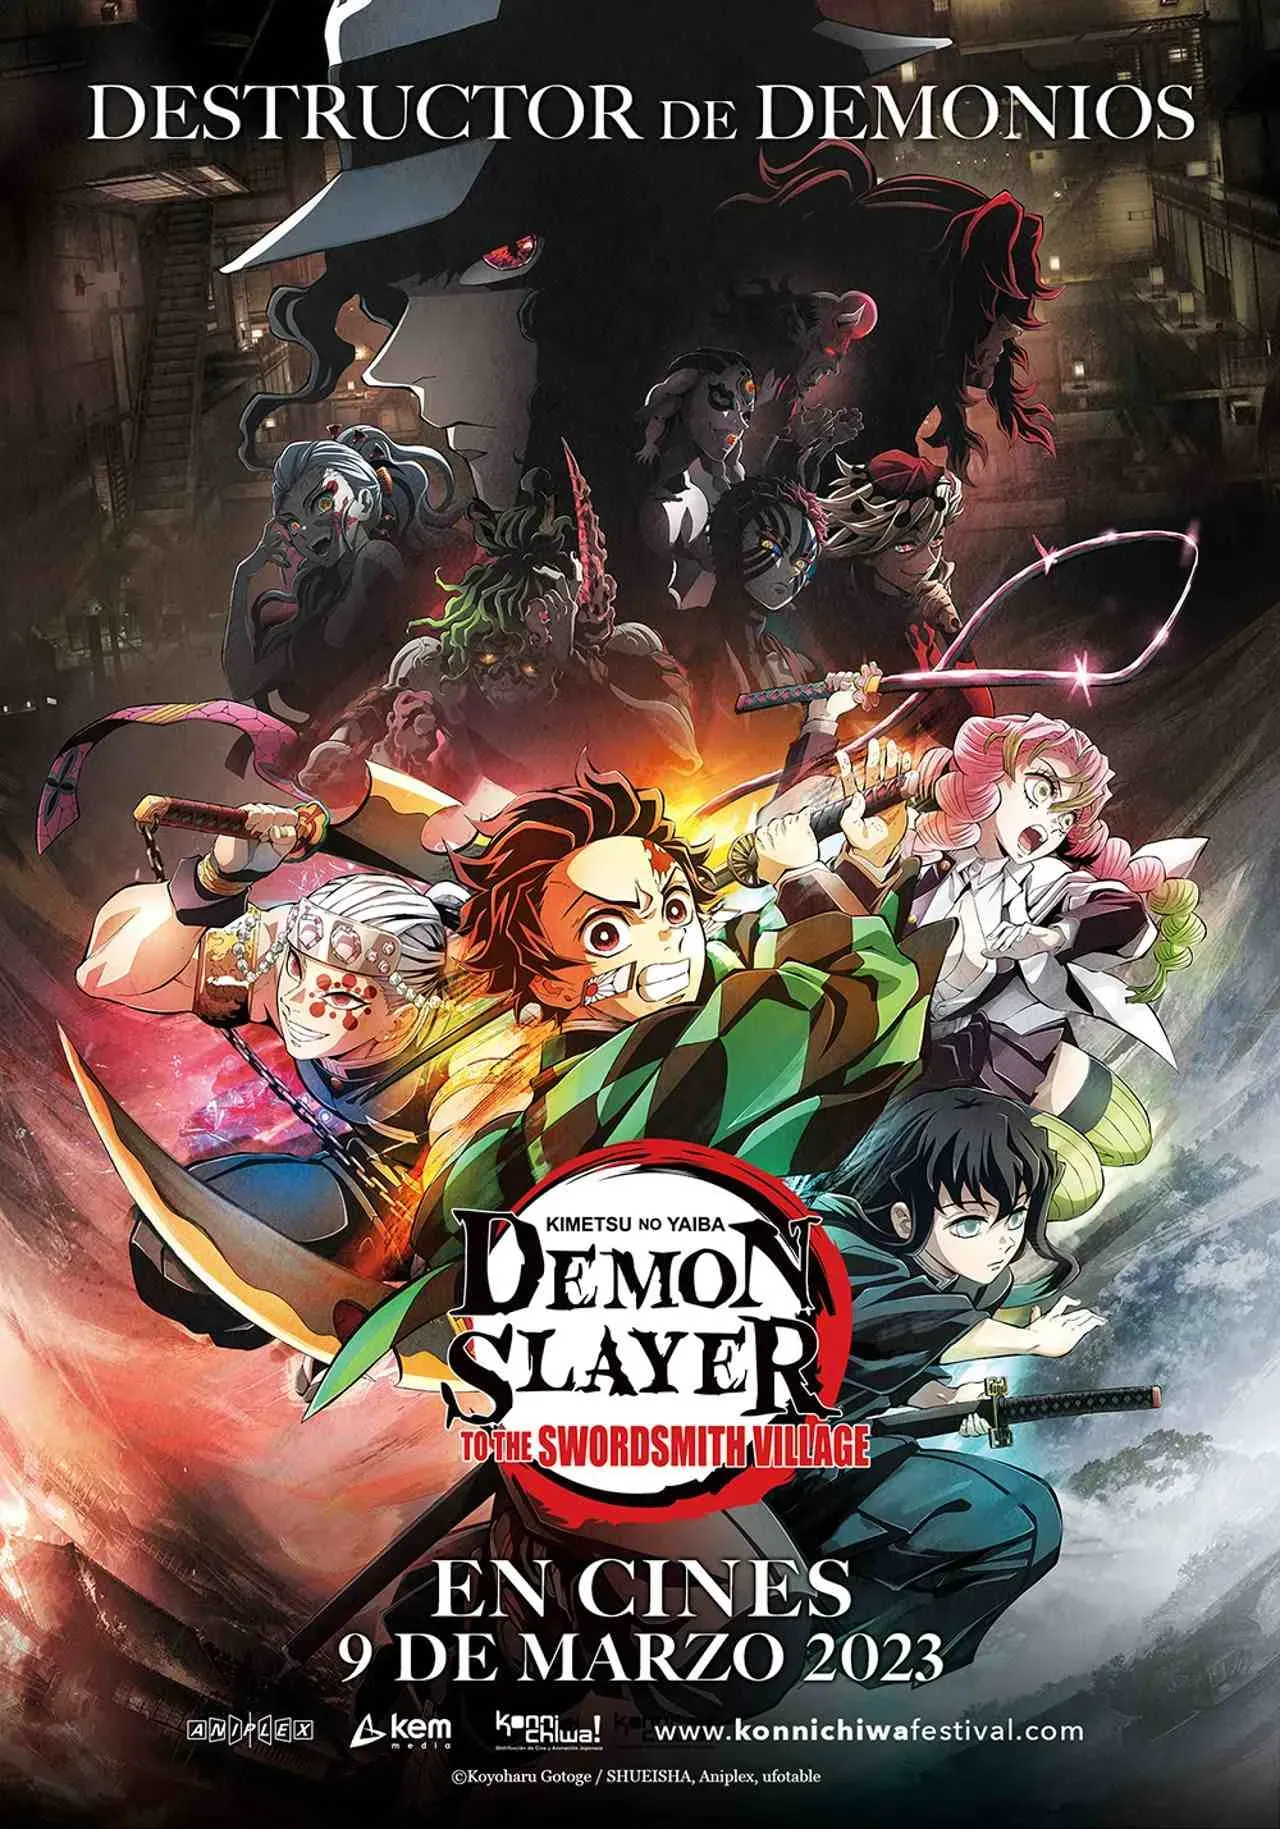 Cuándo se estrena Demon Slayer: Kimetsu no Yaiba temporada 3 en